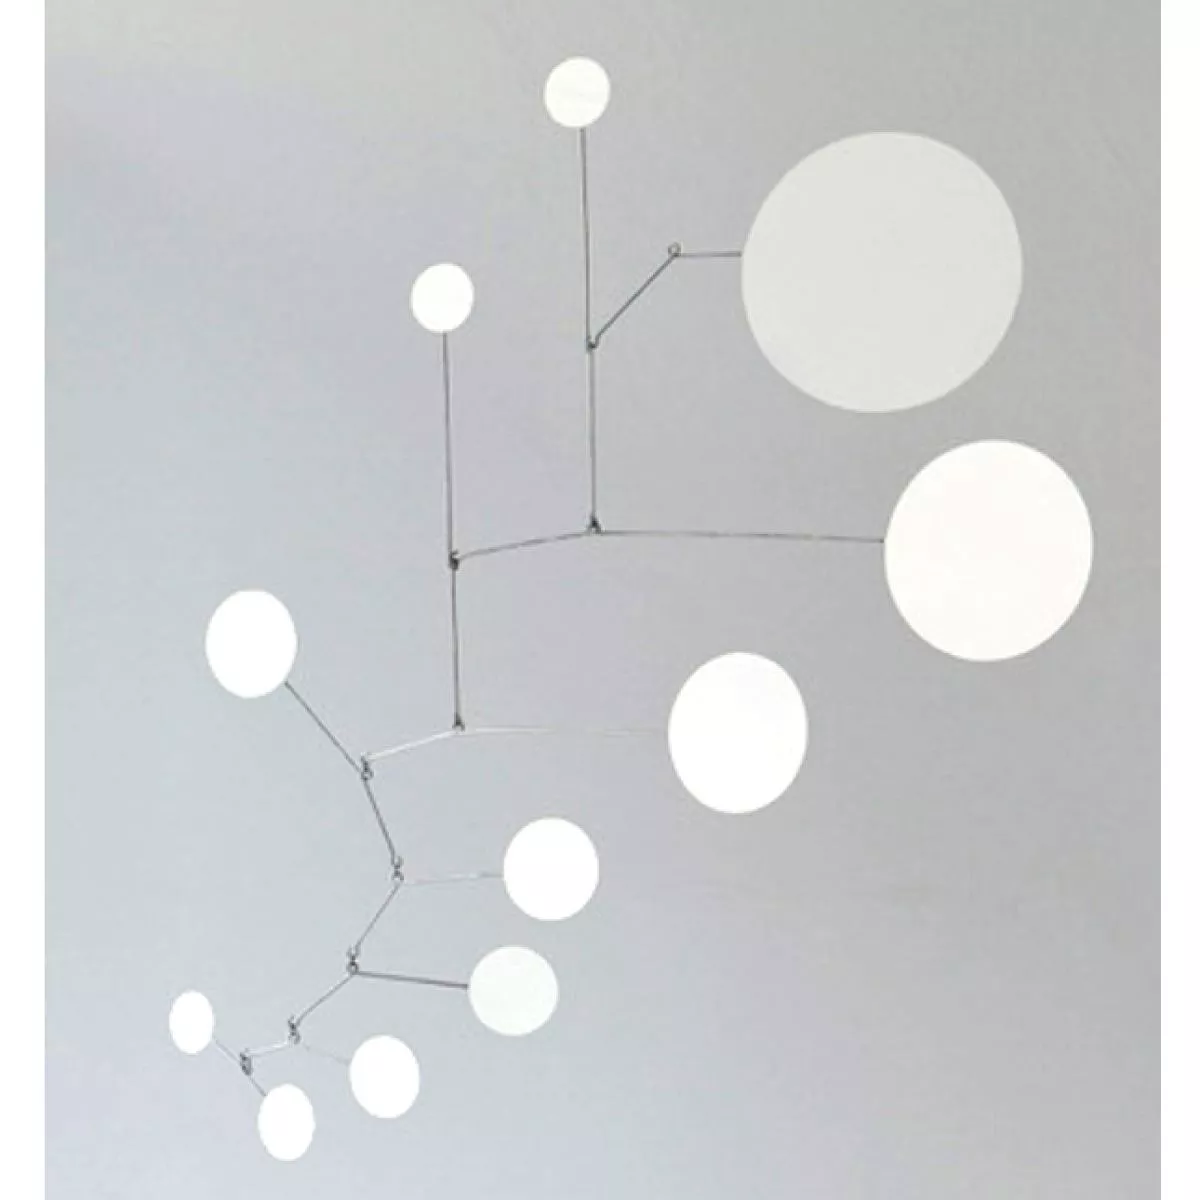 Dots (white) - Handmade Mobile, polished brass | Kunstbaron